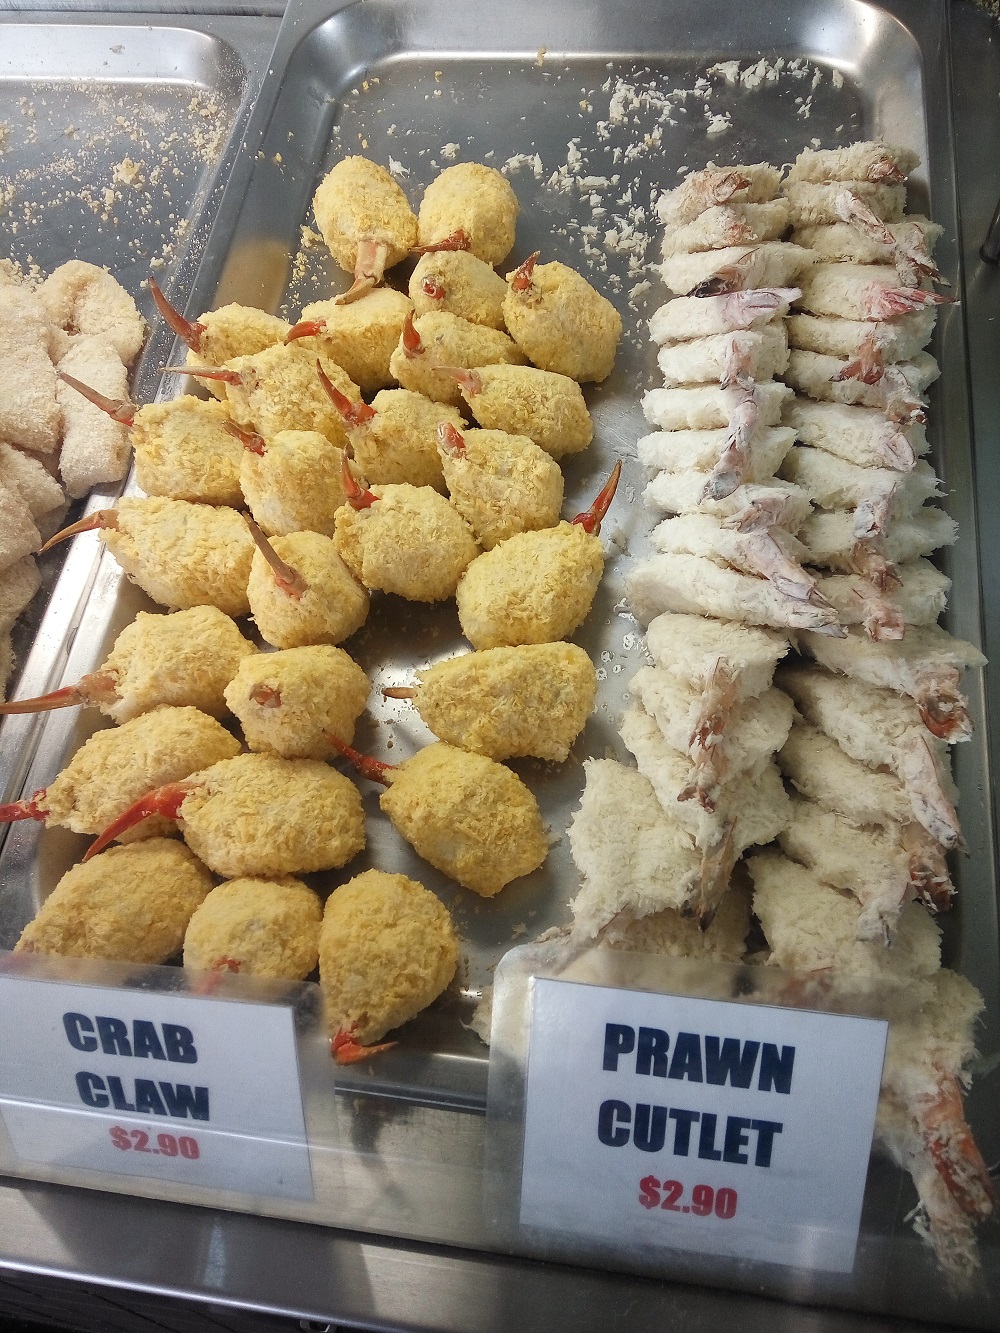 The Sydney Food - Crab claws, and prawn cutlets. AU $2.90, each.